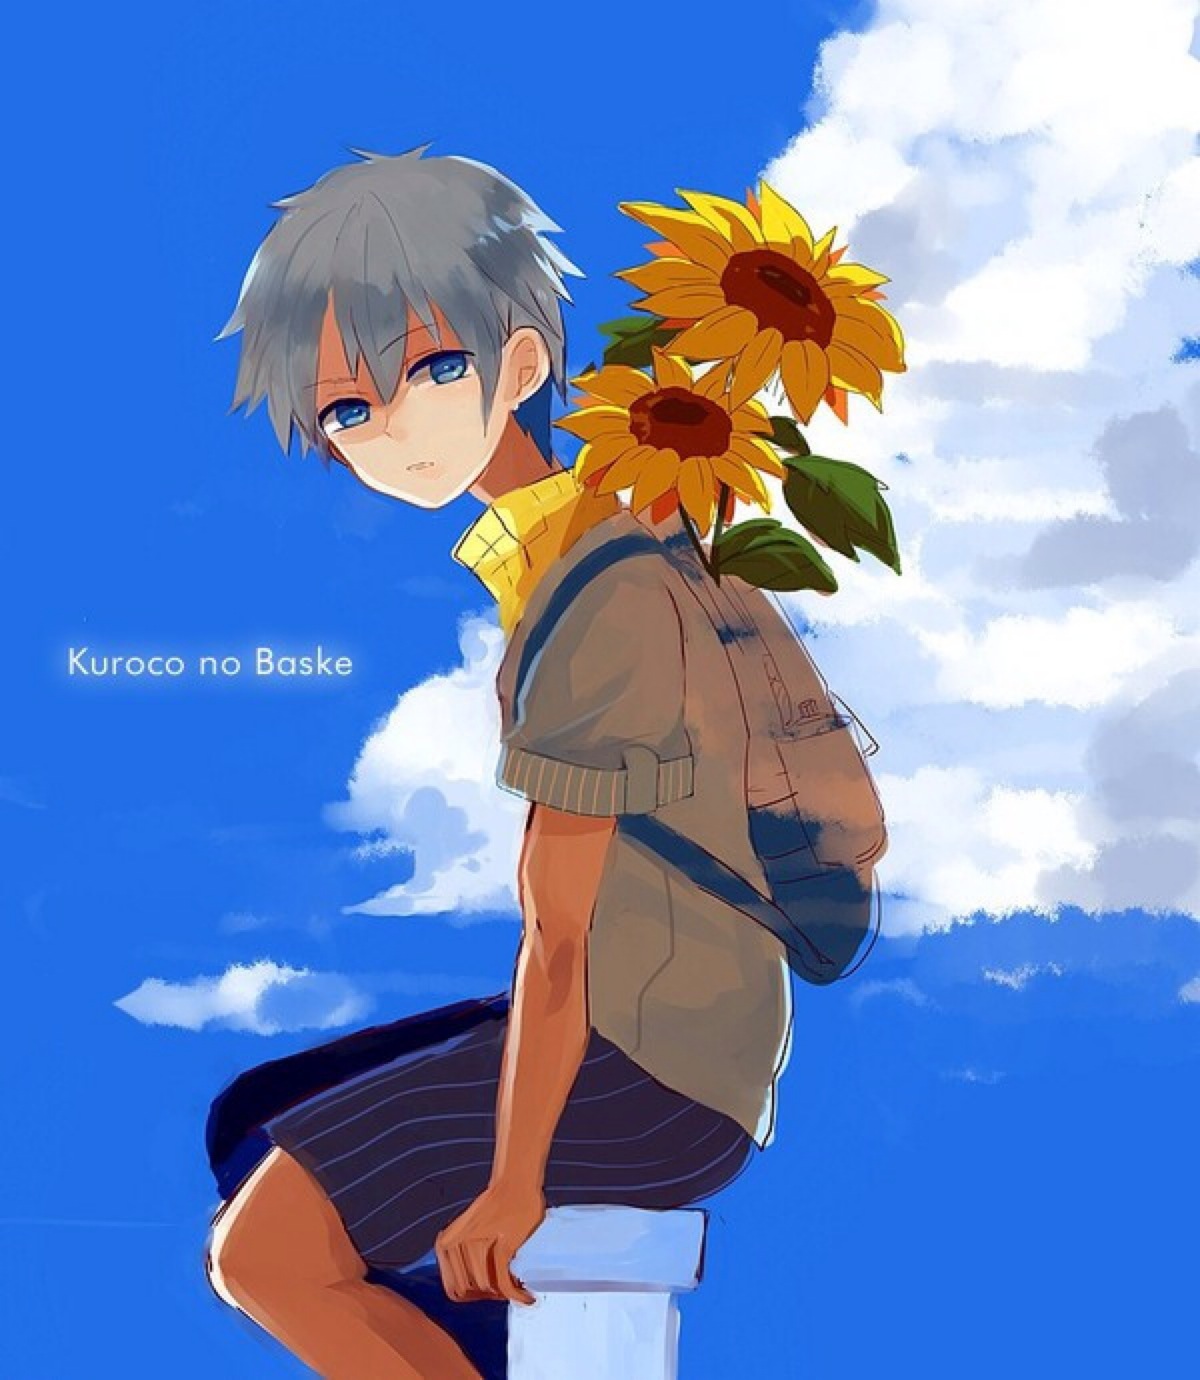 少年与向日葵与空